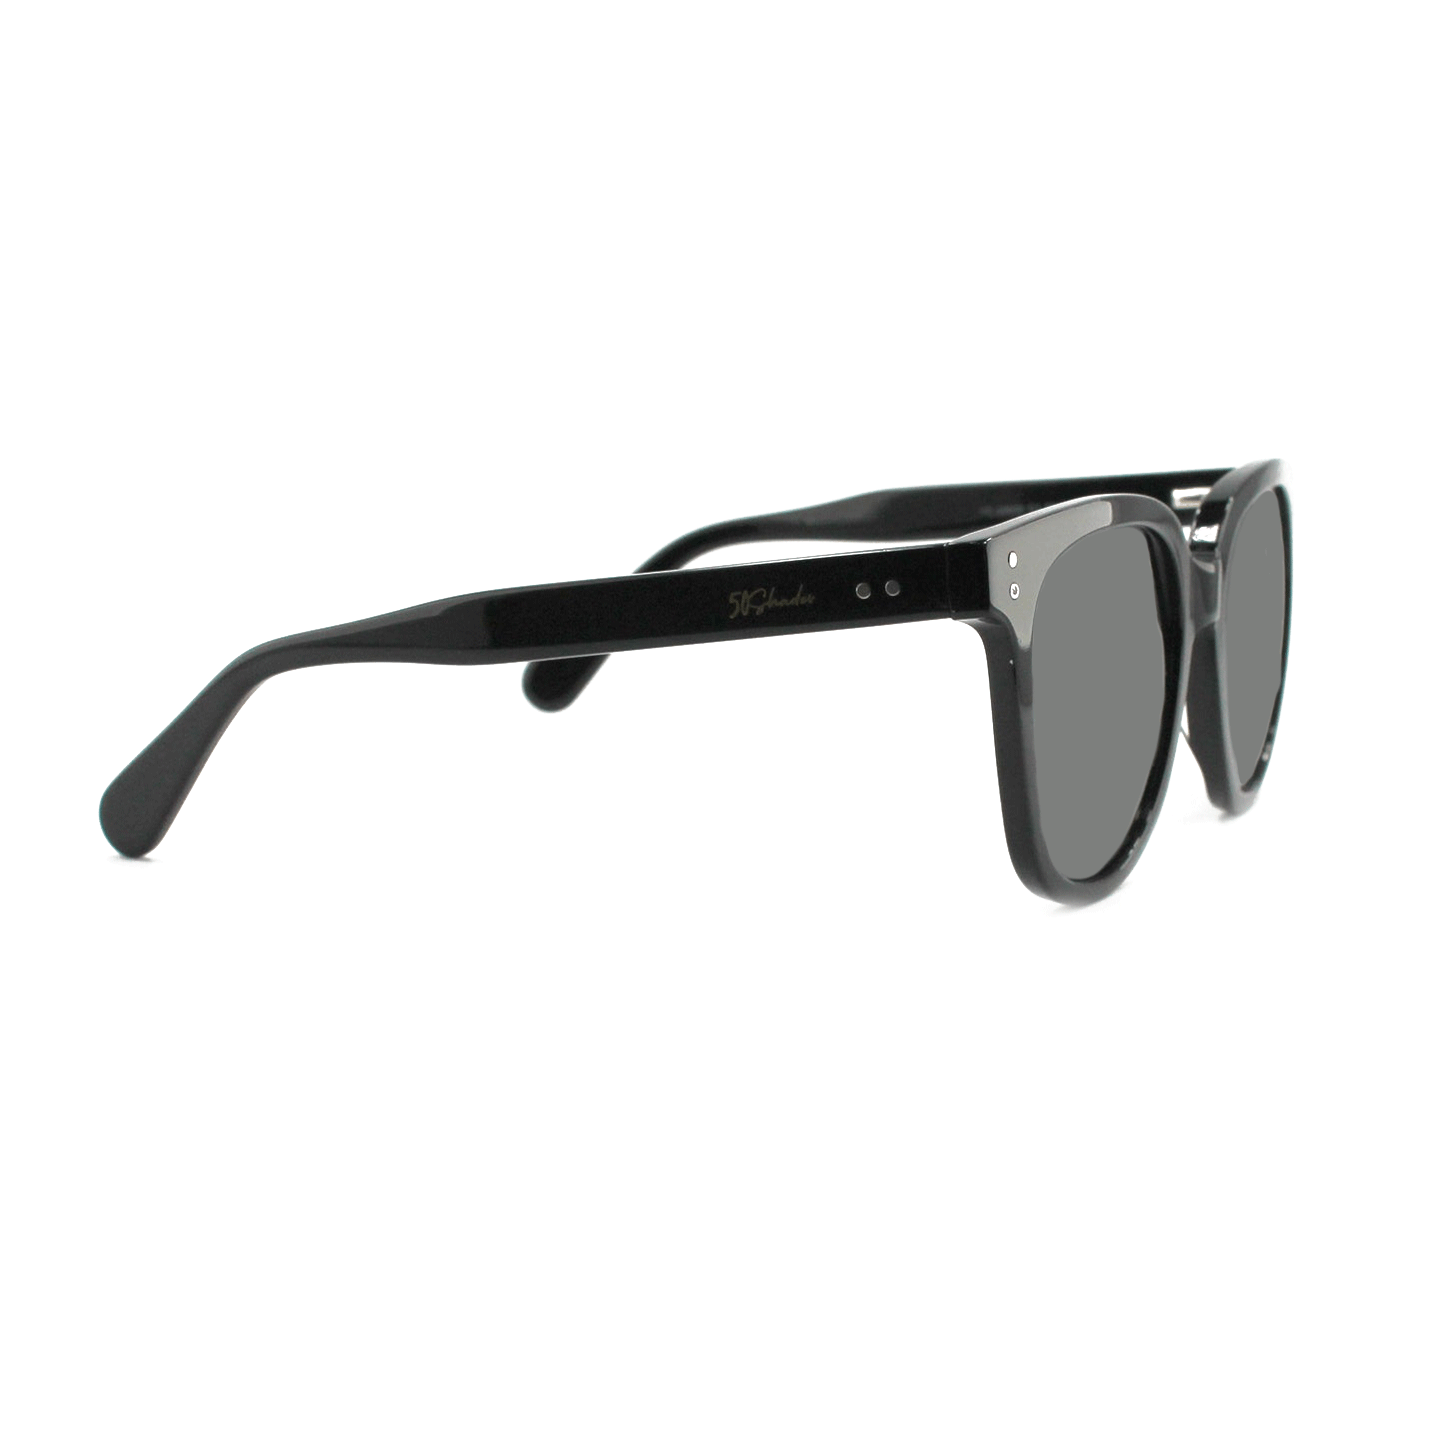 Shades X - Occhiali da sole polarizzati | Modello 29005